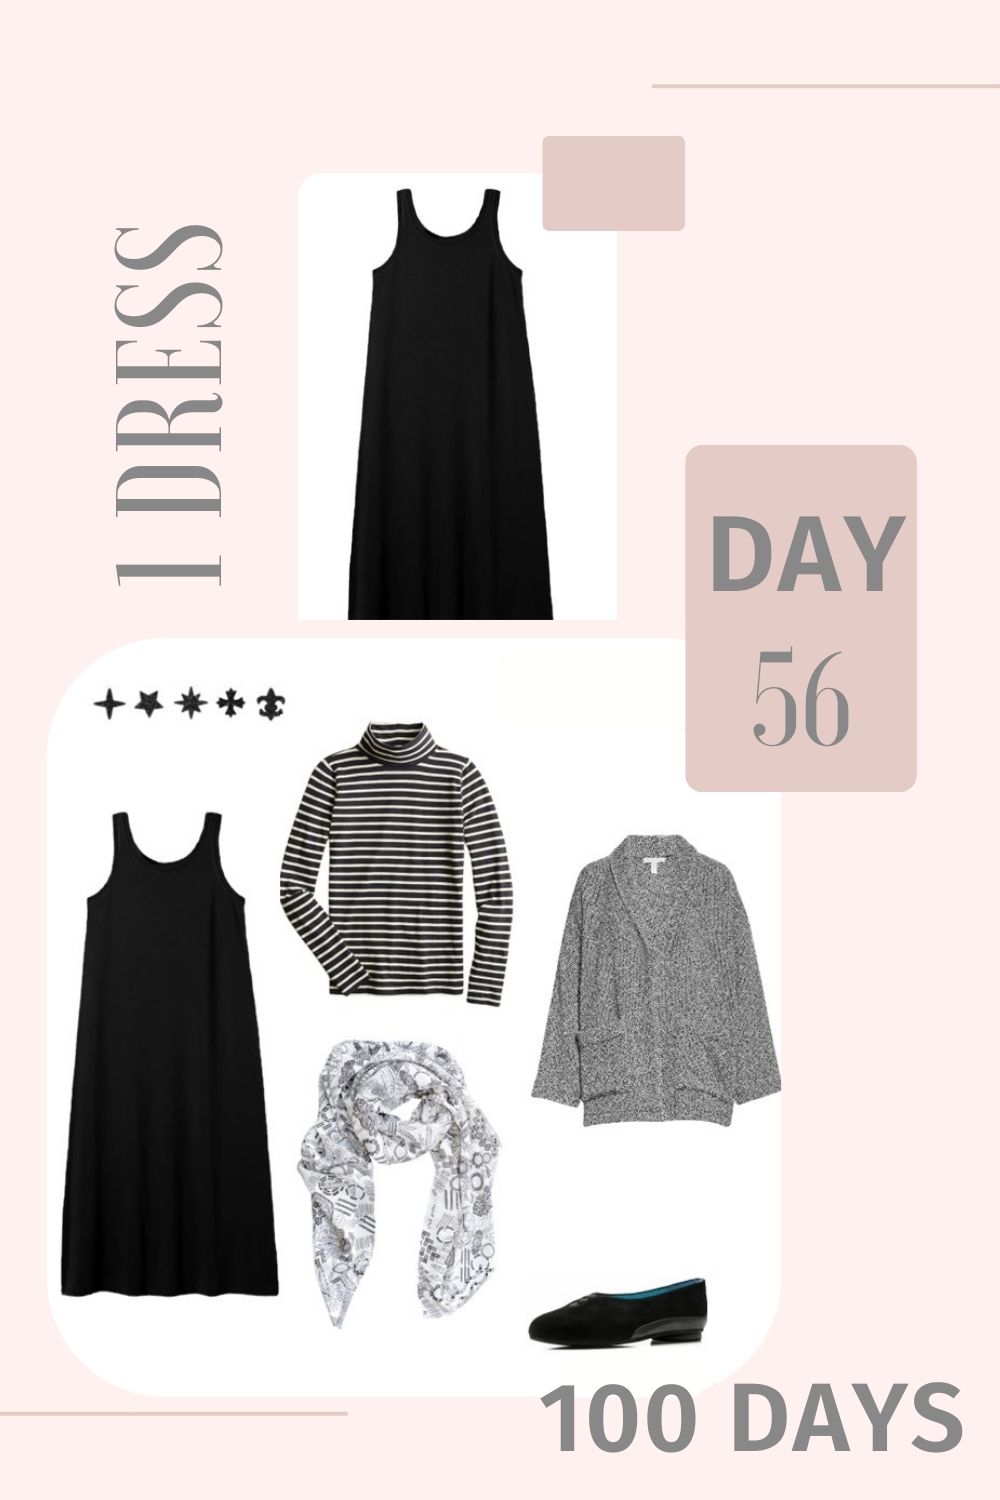 1 dress 100 days Day 56